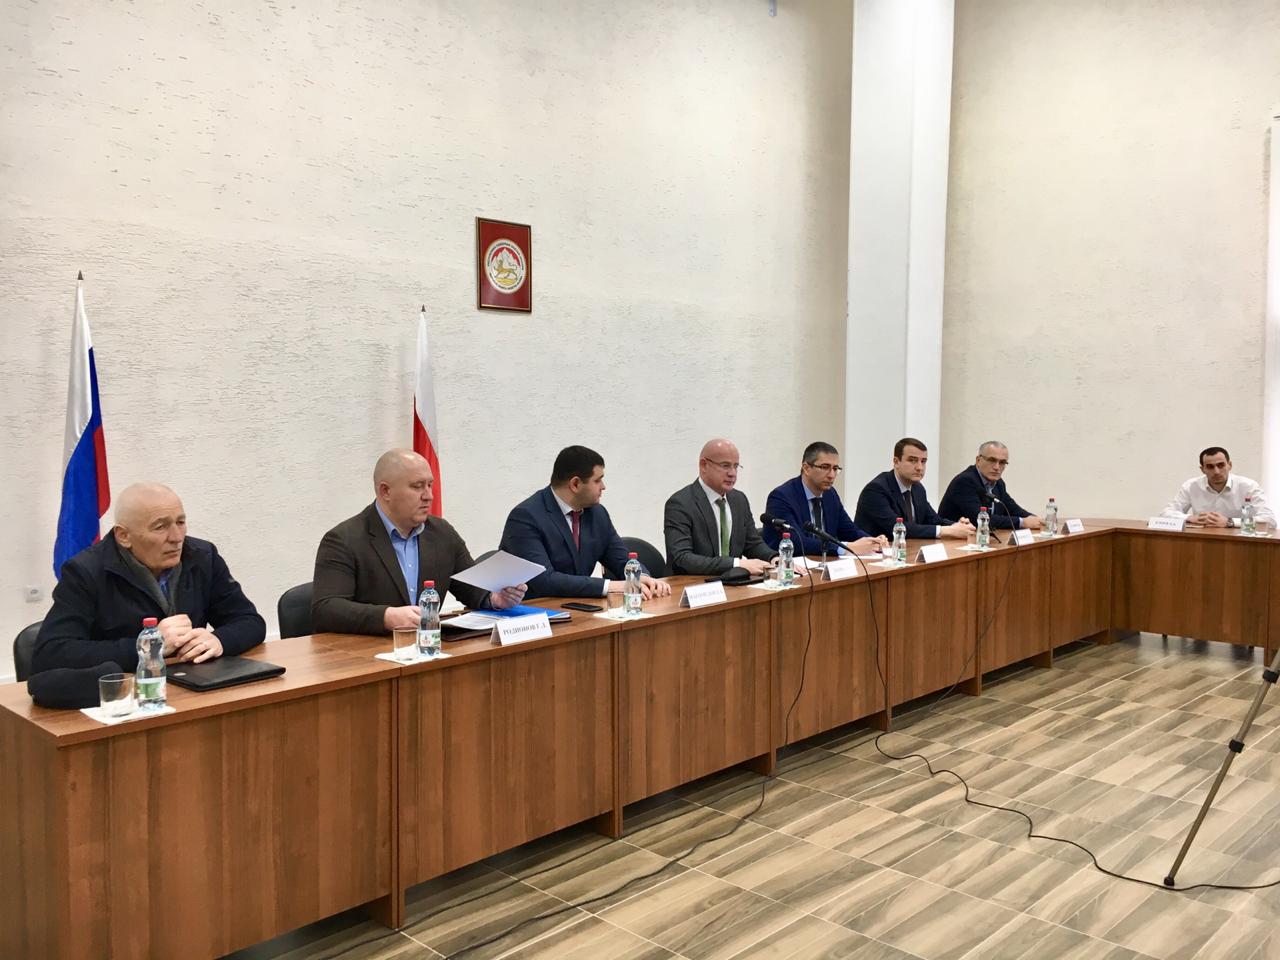 По поручению Главы Республики Северная Осетия-Алания в 2018 году созданы Советы по предпринимательству при Главах муниципальных образований Республики Северная Осетия-Алания.